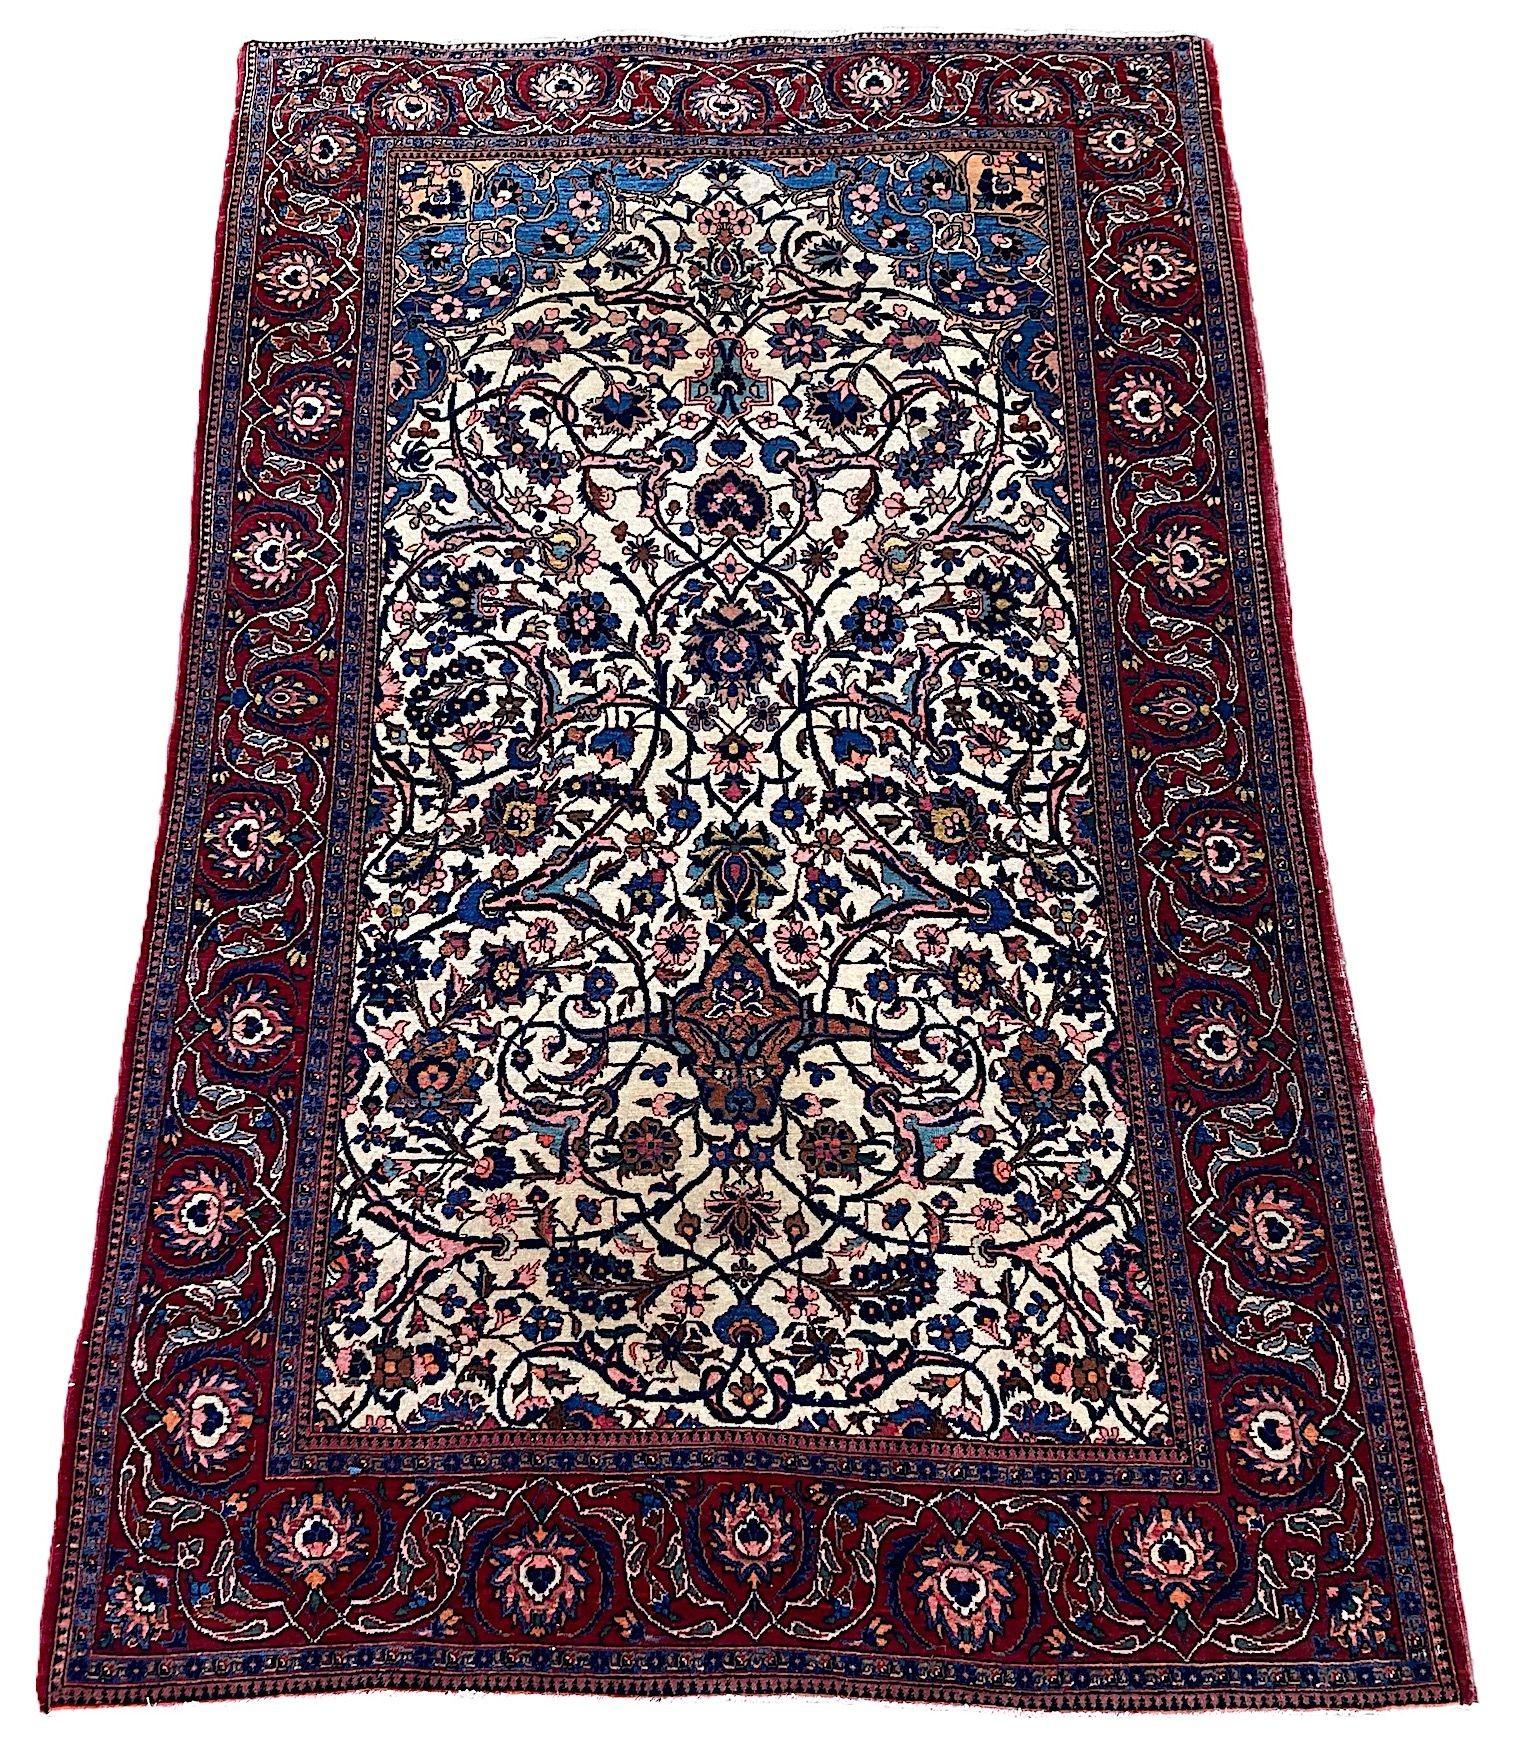 Ein wunderschöner antiker Kashan-Teppich, handgewebt um 1920. Der Teppich zeigt ein Allover-Muster aus großen Blütenköpfen und Palmetten, die durch Ranken und Arabesken auf einem ungewöhnlichen elfenbeinfarbenen Feld und einer roten Bordüre